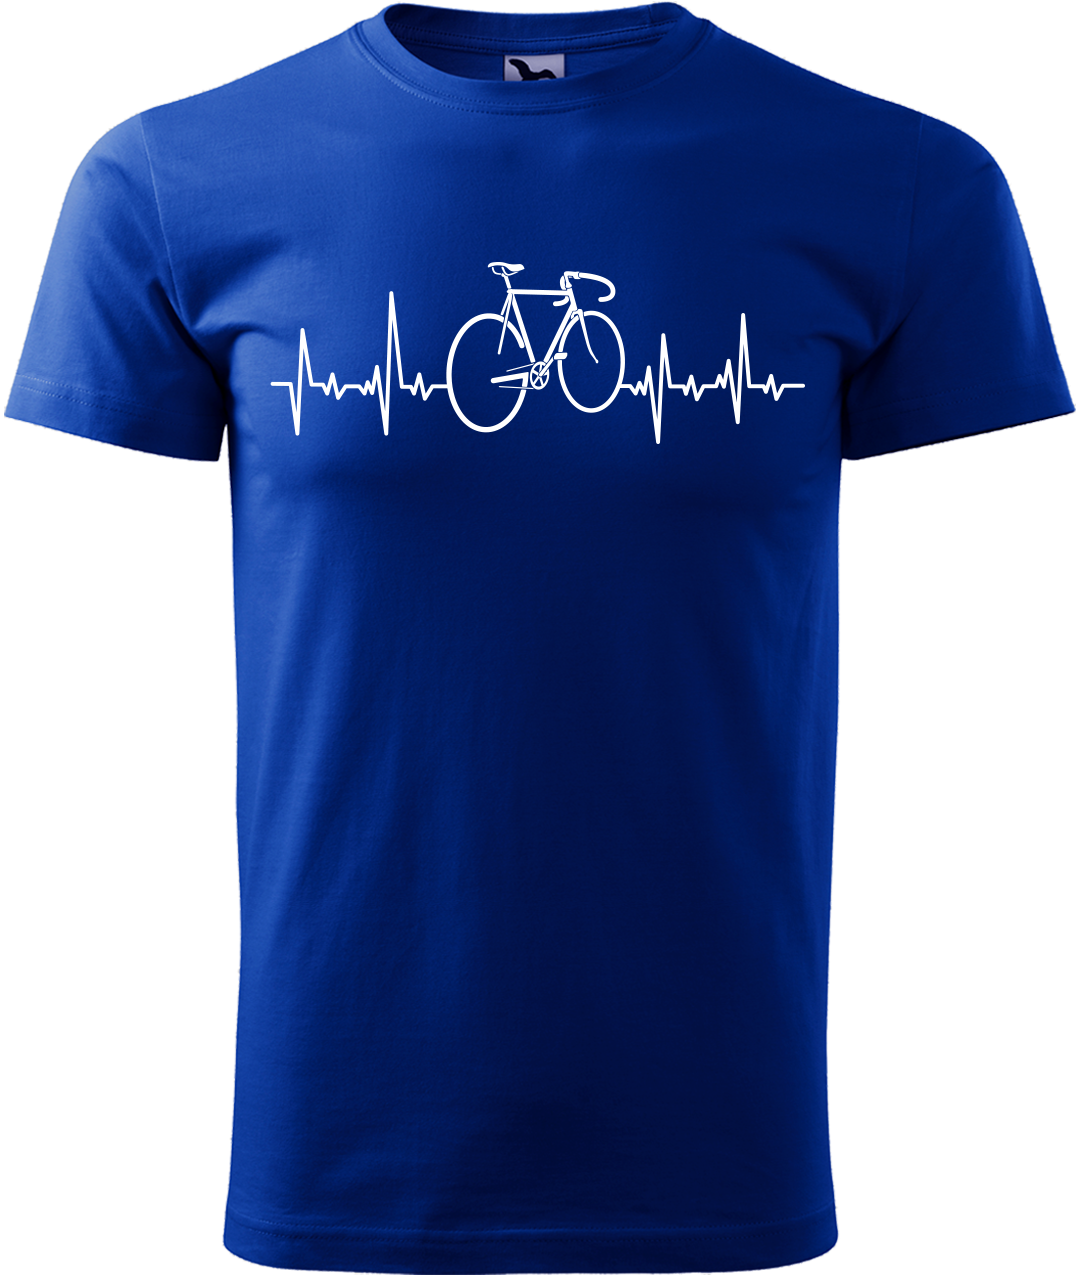 Pánské tričko s kolem - Cyklistův kardiogram Velikost: 2XL, Barva: Královská modrá (05)